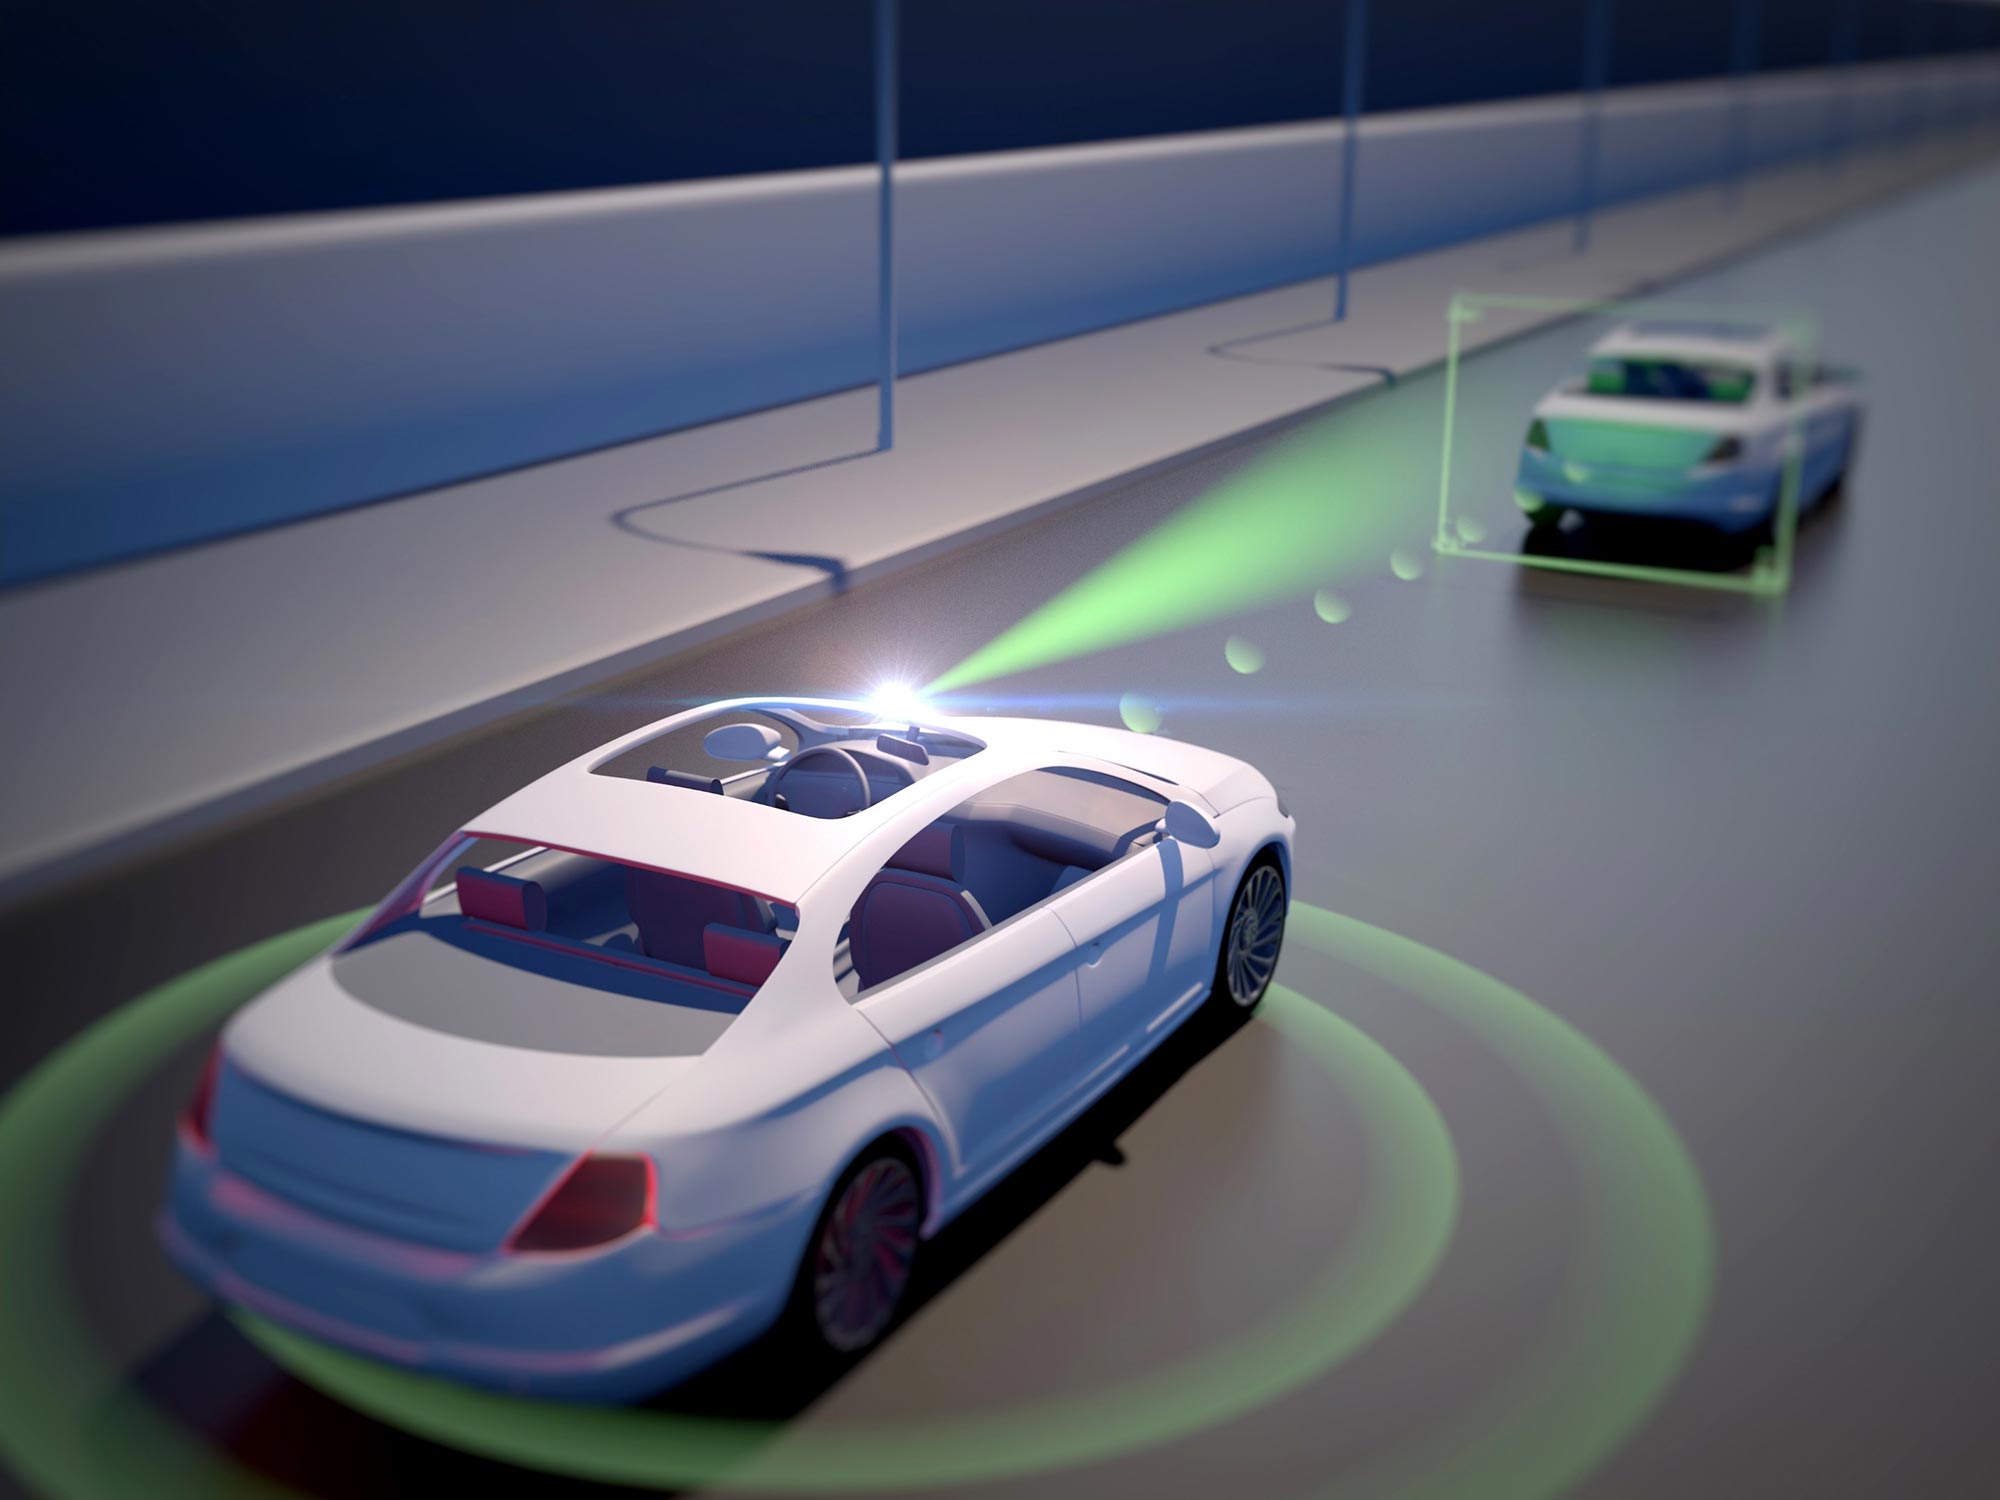 autonomous driving concept